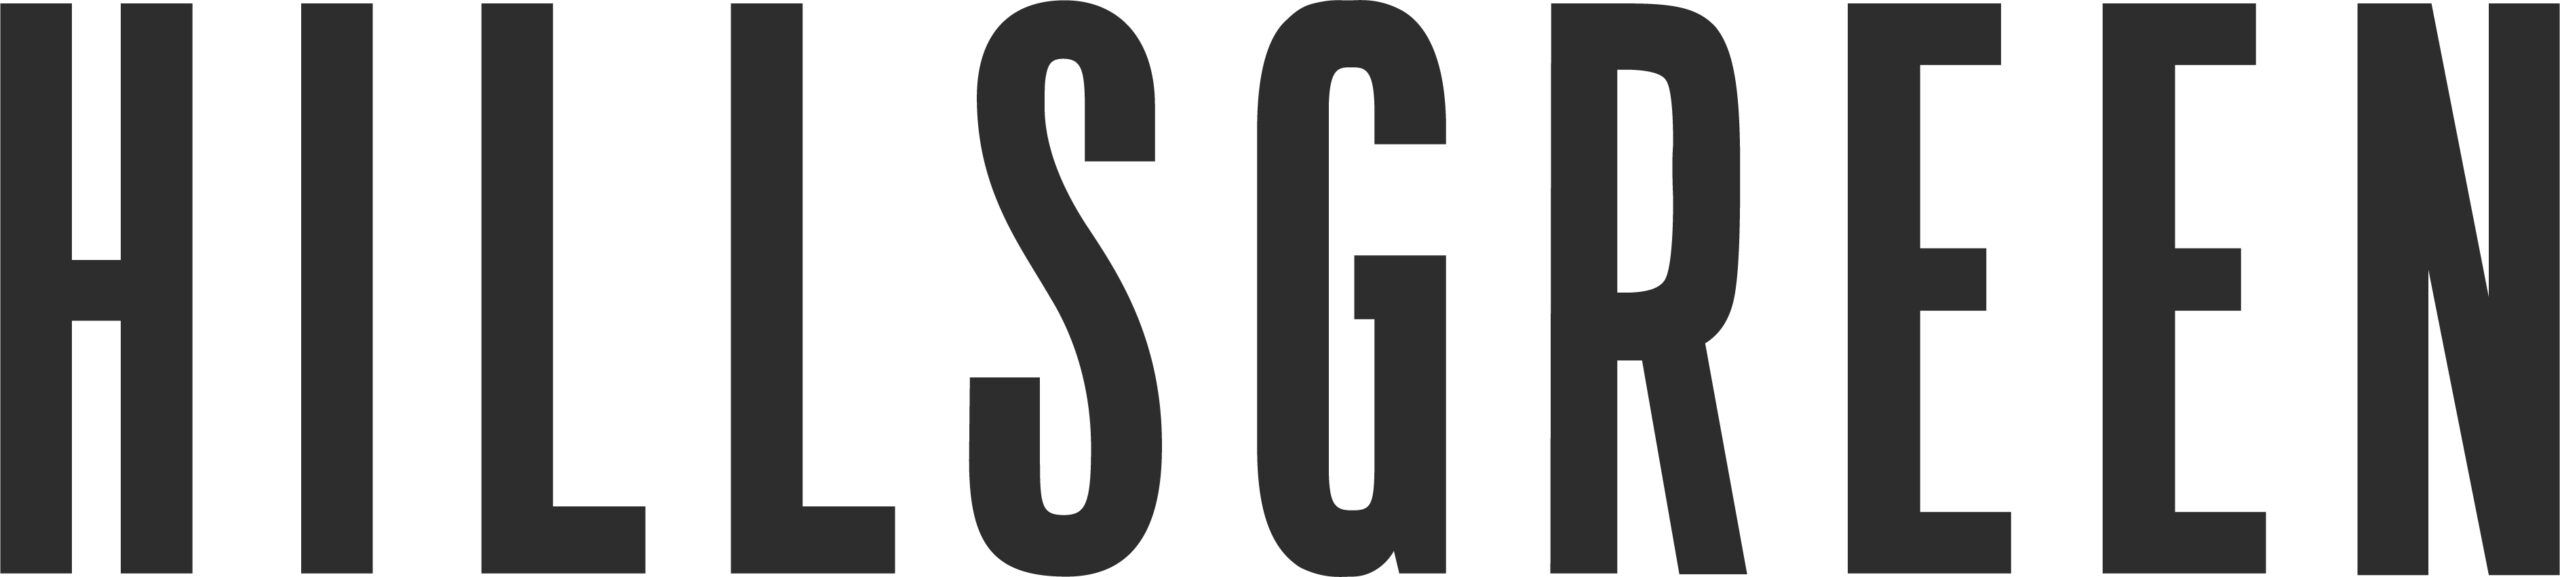 Hillsgreen logo for seminar sponsorship